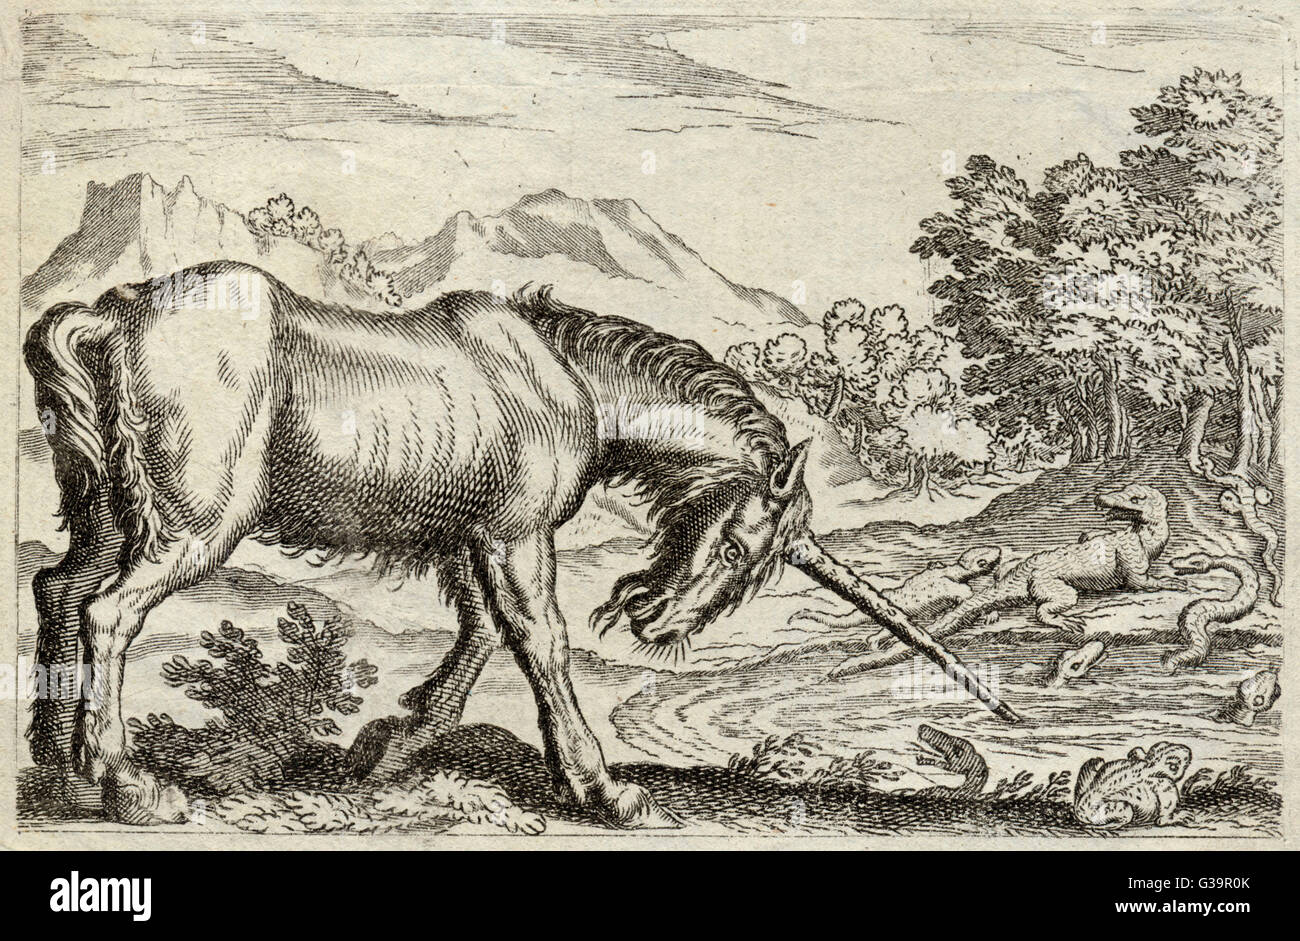 Un unicorno, con un assortimento di rettili e un motto latino: "Non con potrebbero, ma con la virtù" Data: xvii secolo Foto Stock